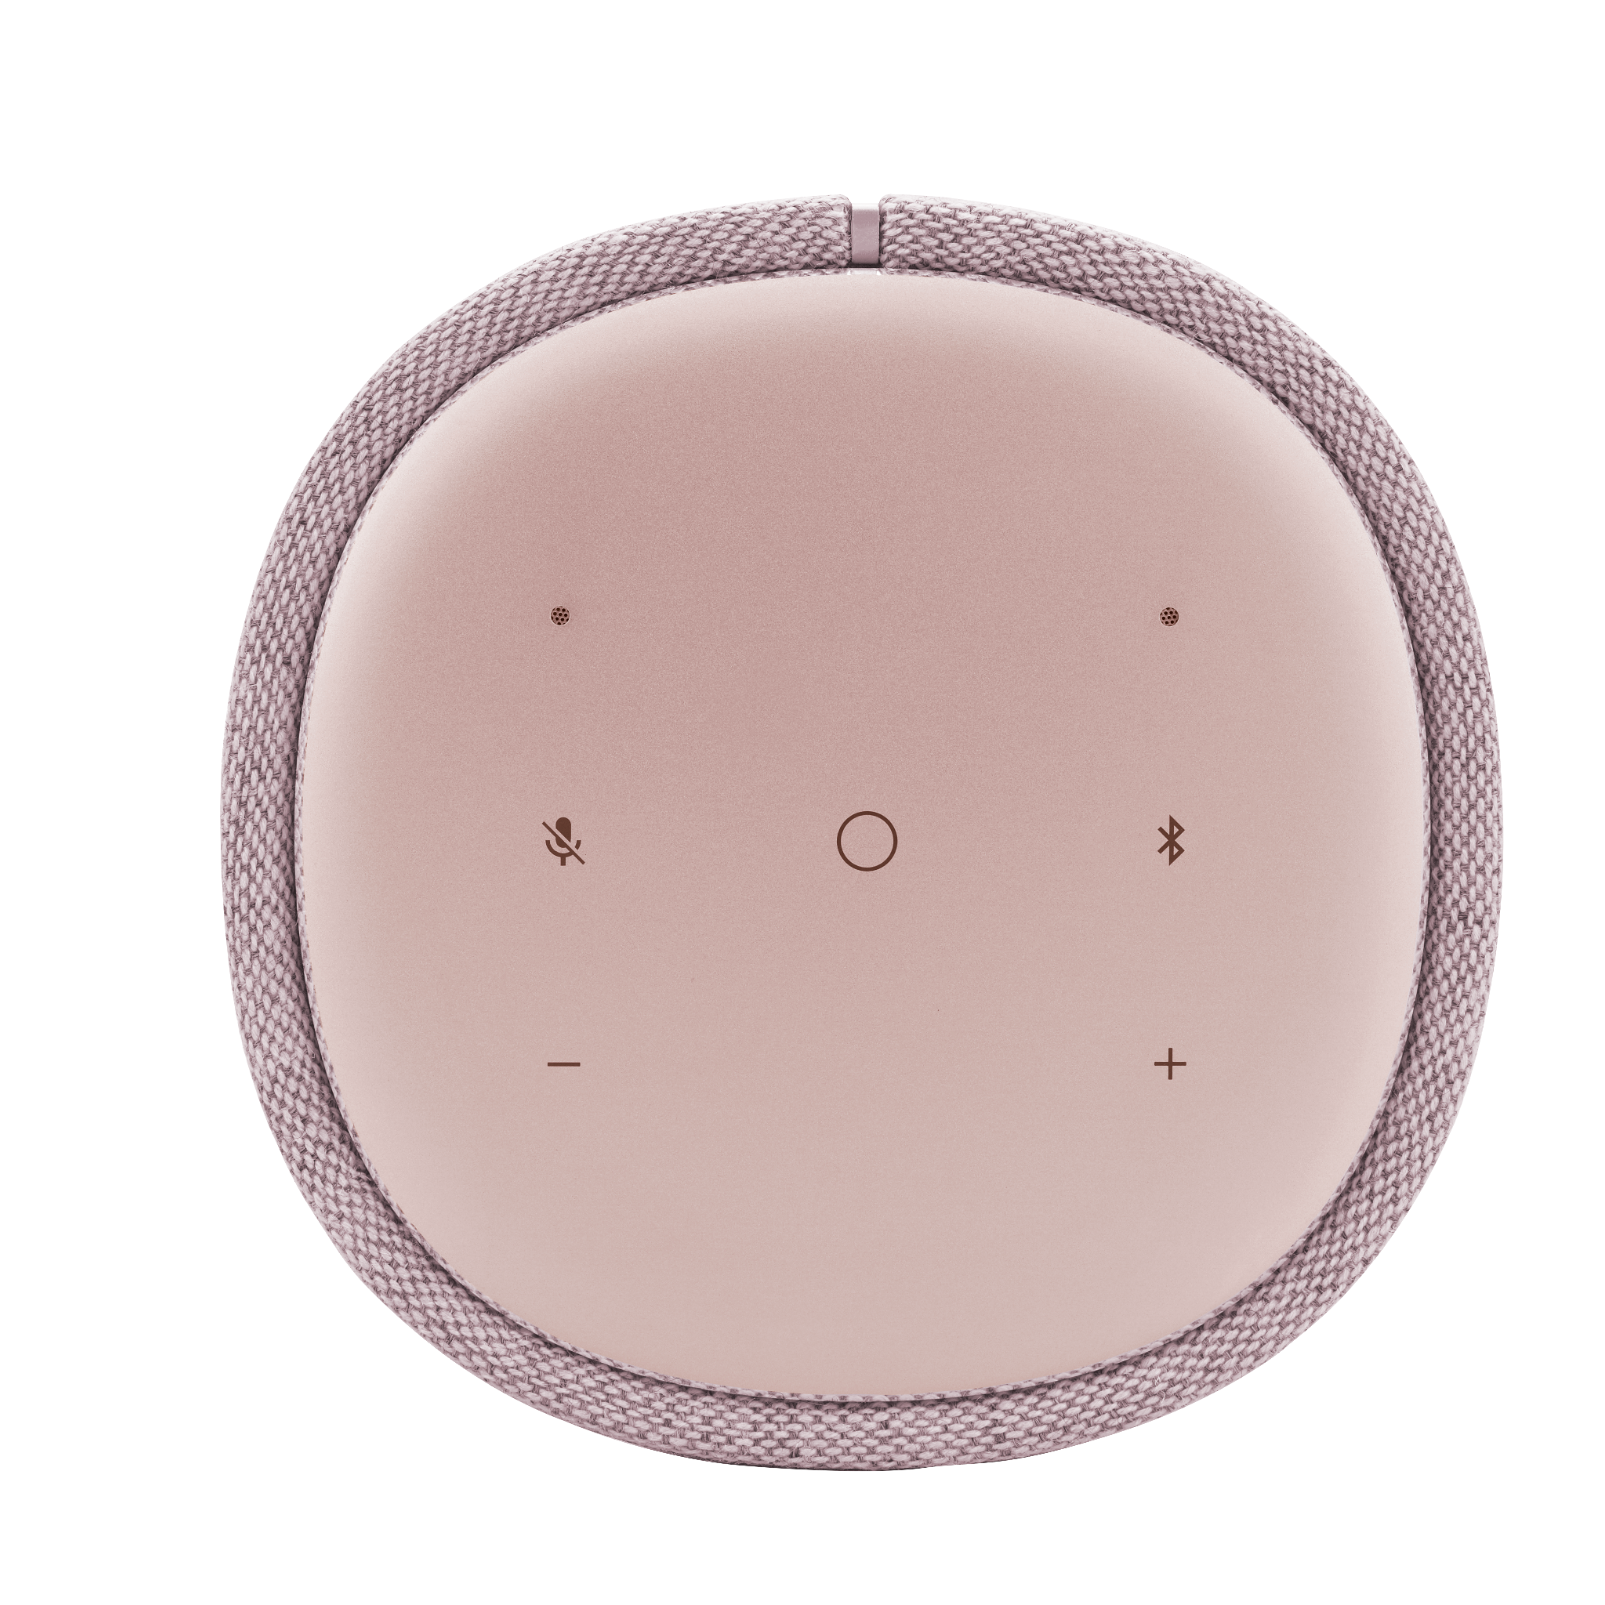 Harman Kardon Citation One MKII - Pink - All-in-one smart speaker with room-filling sound - Detailshot 2